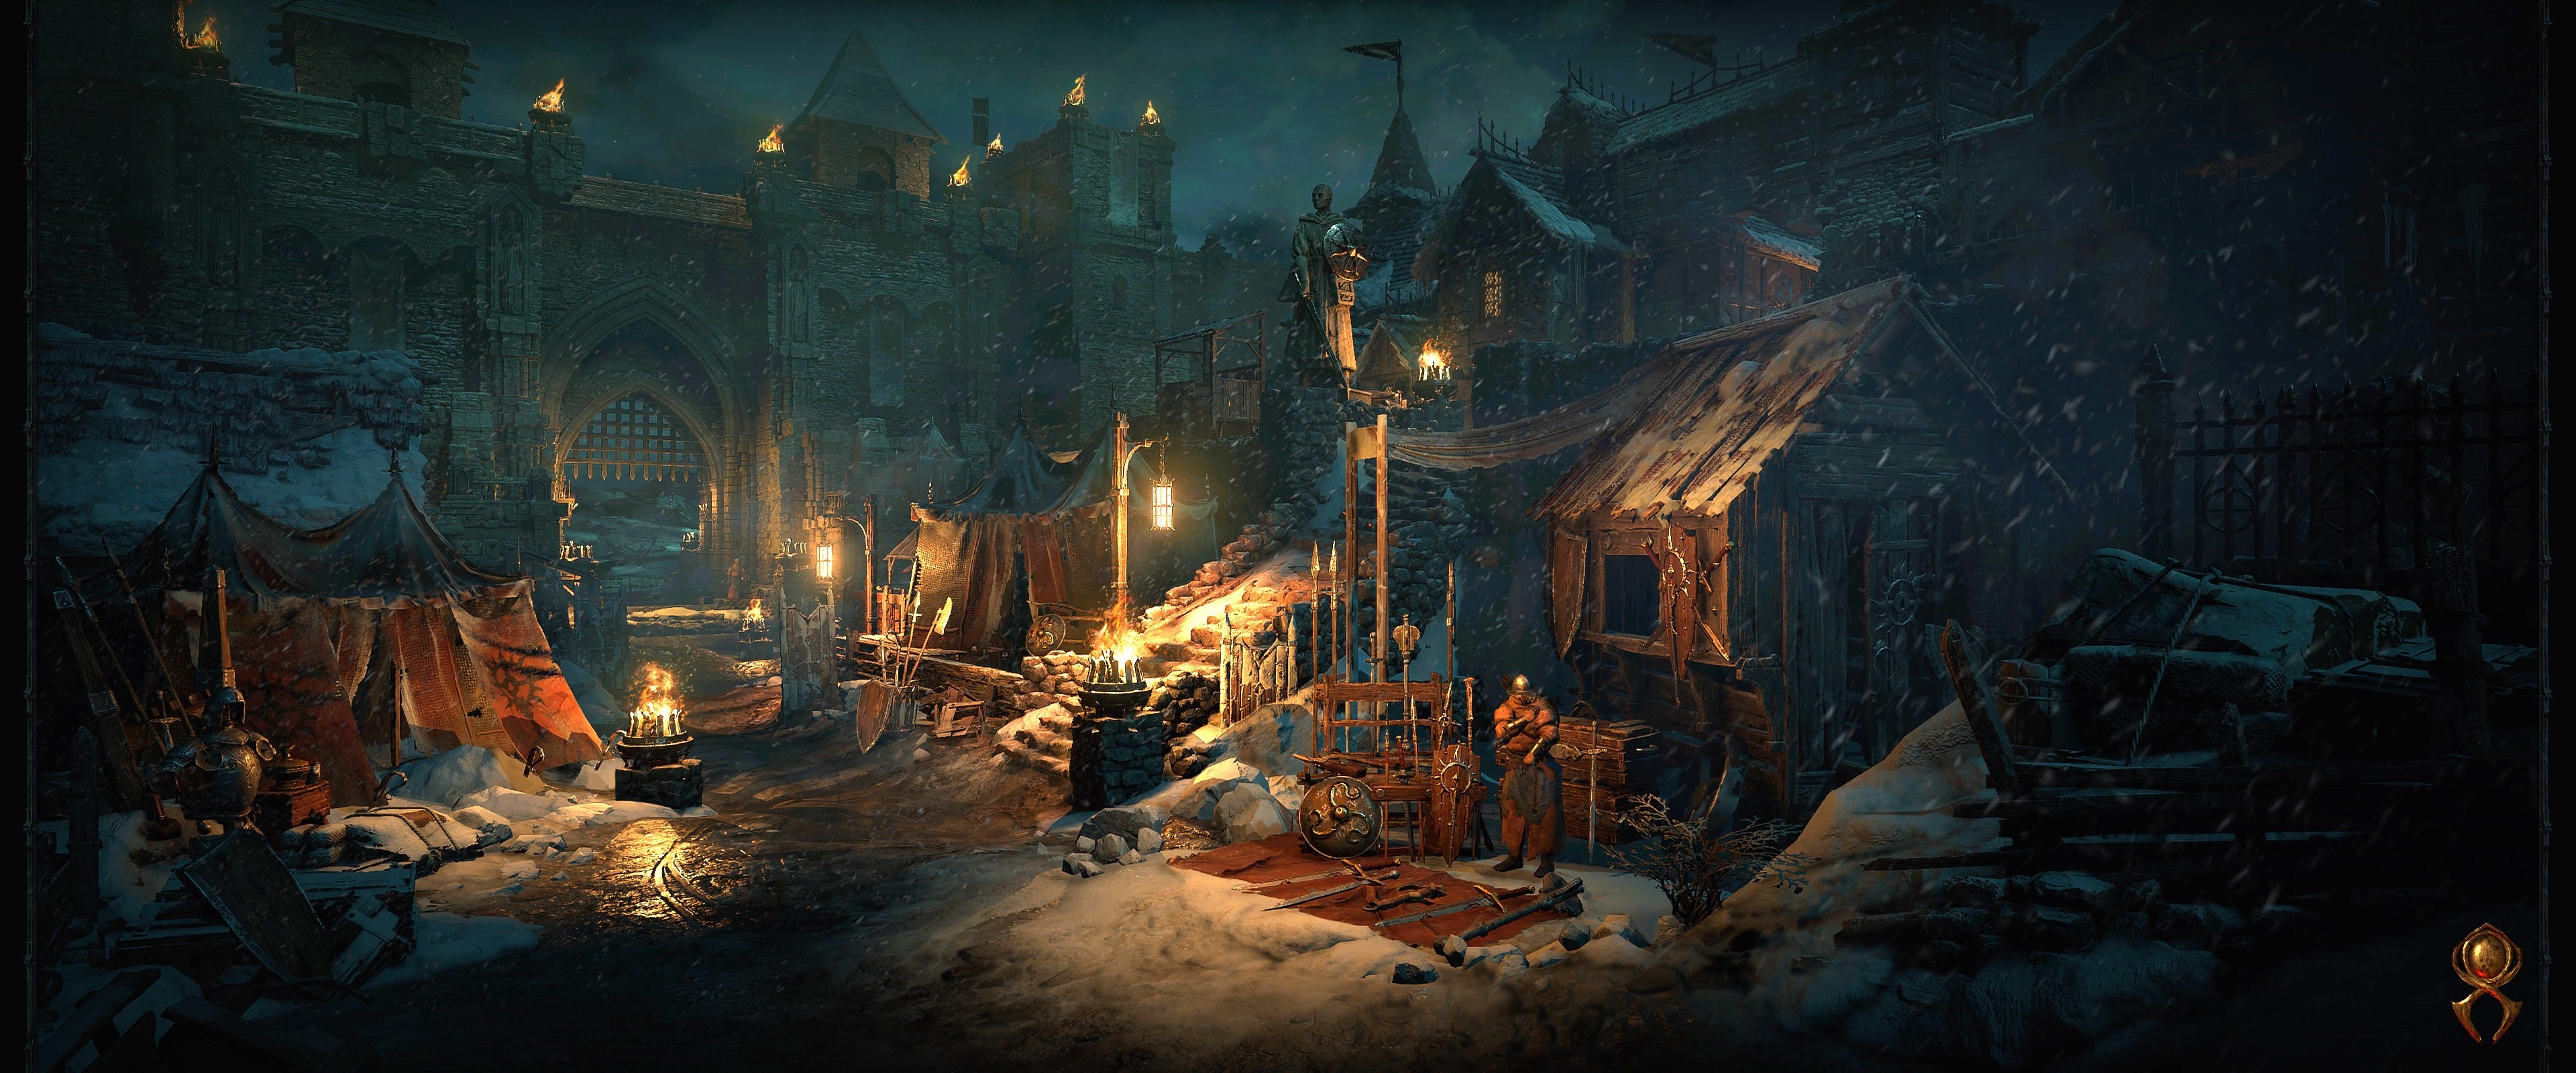 Diablo IV Closed Beta Impressions: Best Return to Sanctuary?